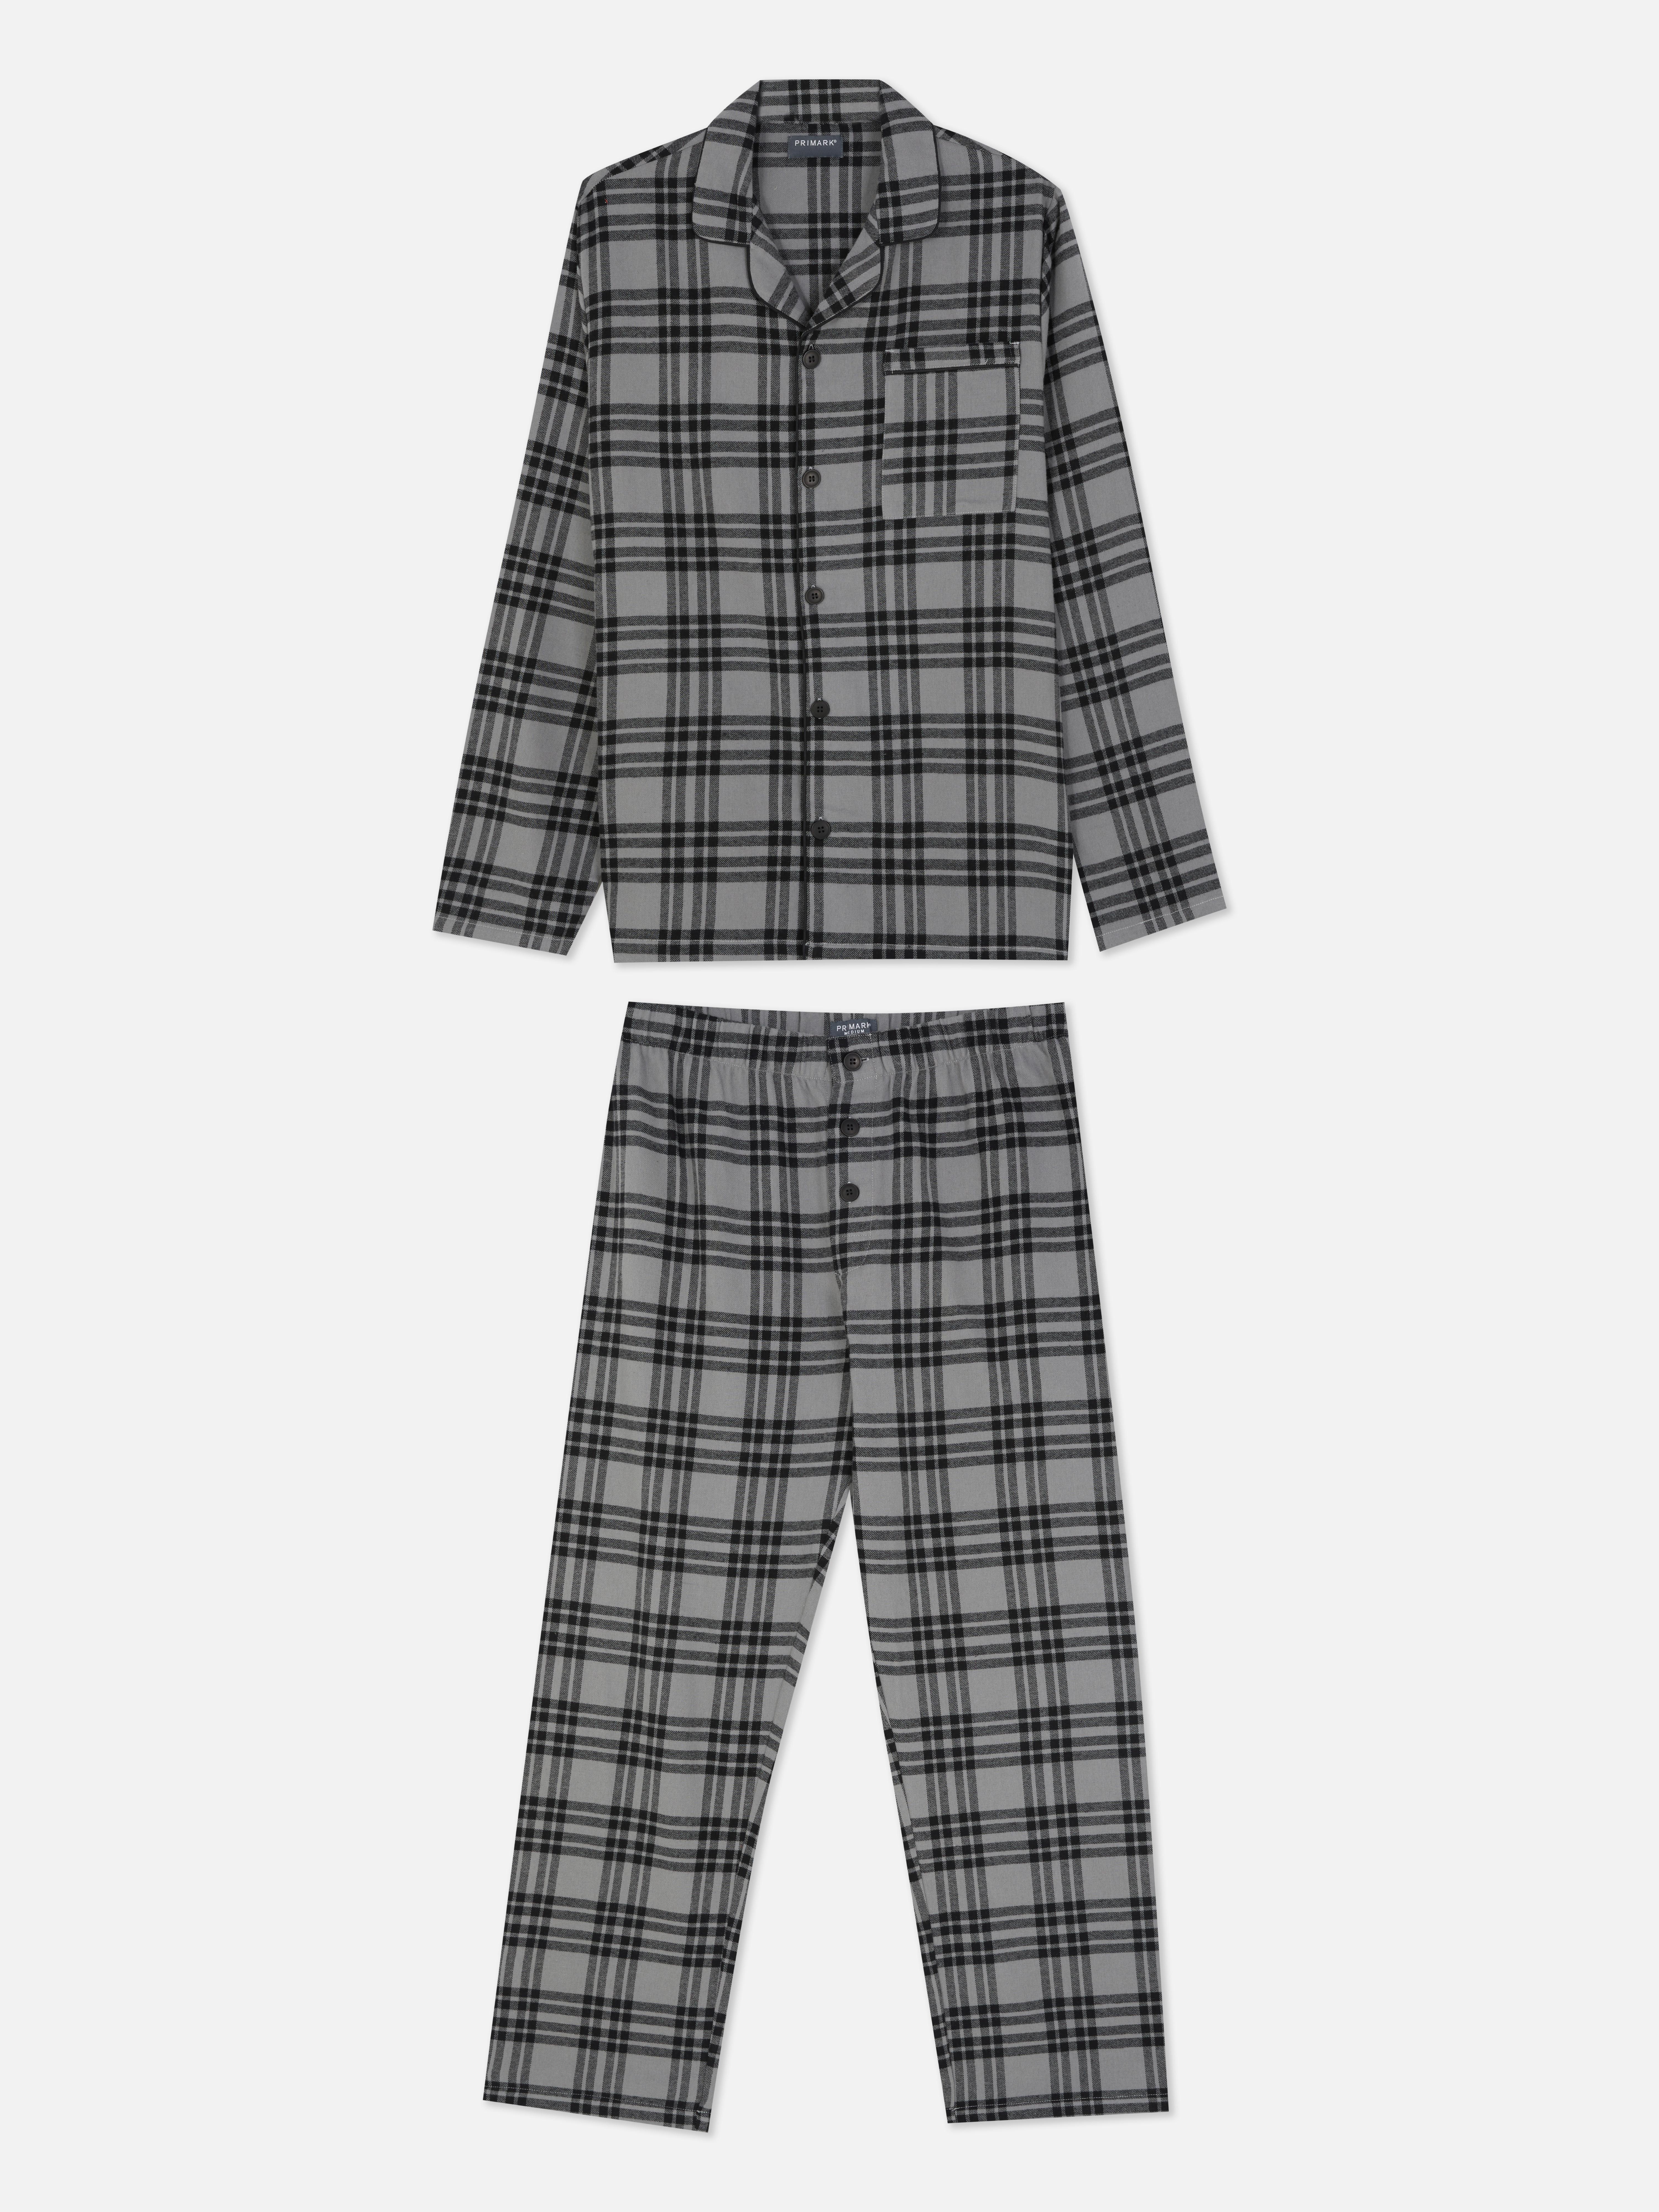 Pijama de franela a cuadros | Pijamas para hombre Ropa para hombre | Nuestra línea de moda masculina | Todos productos Primark | España